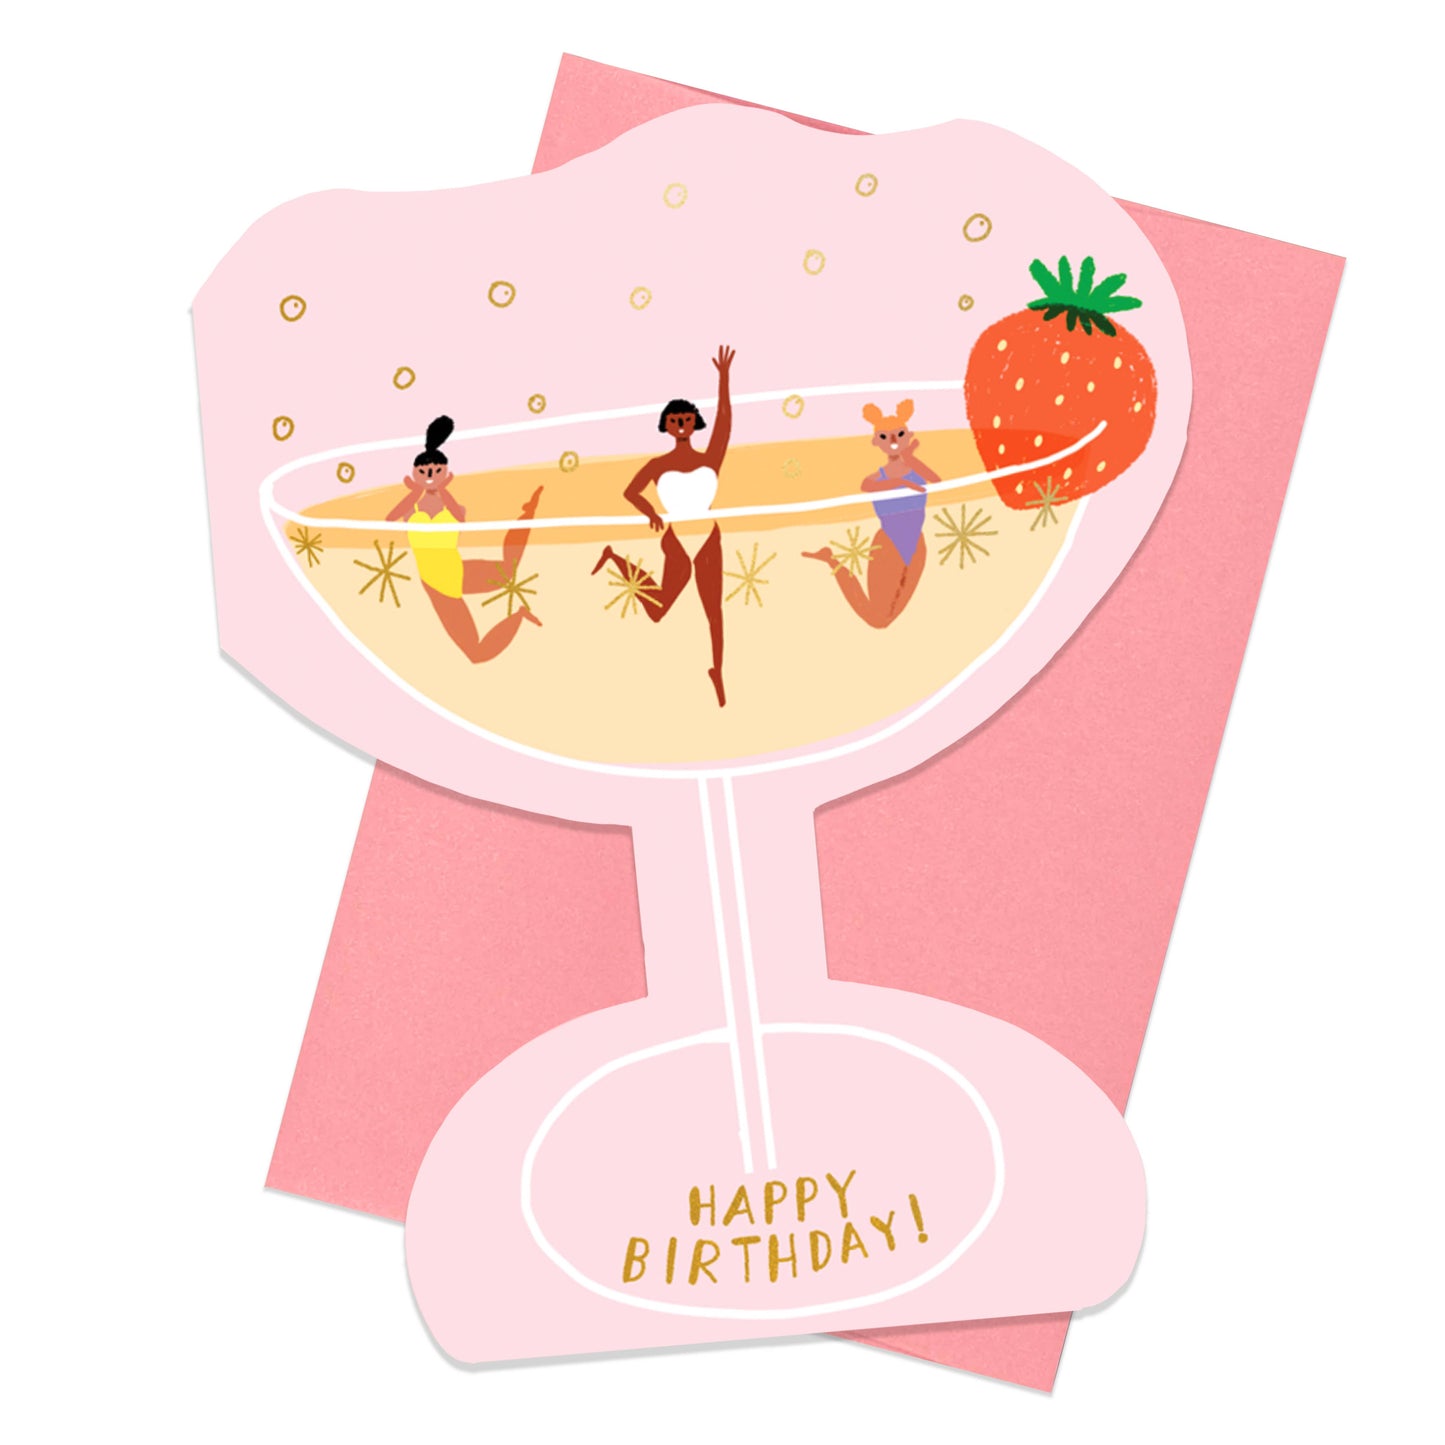 CHAMPAGNE - Shaped Birthday Card - Carolyn Suzuki